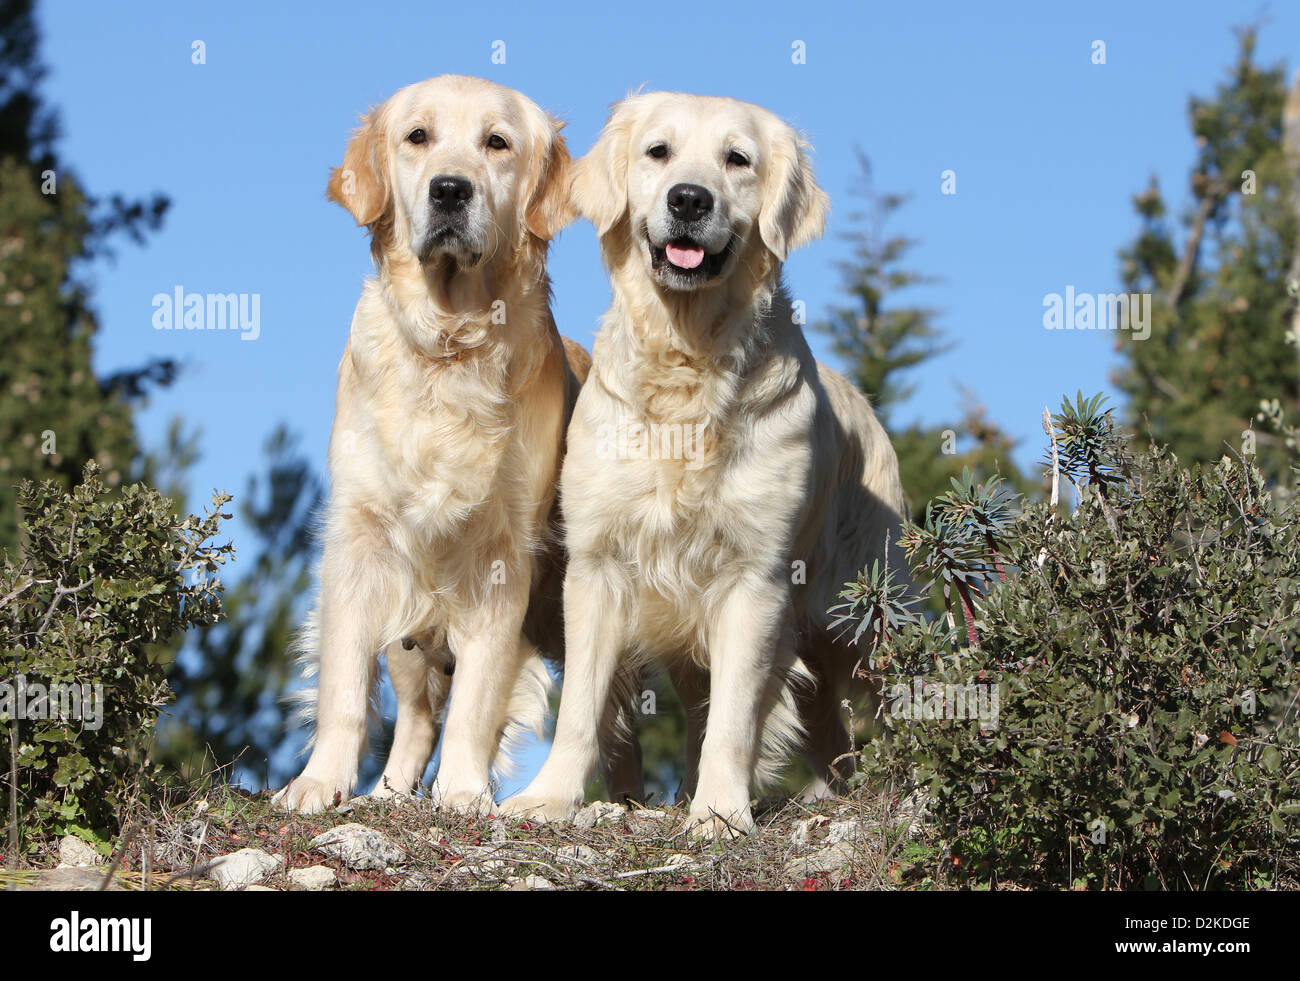 Hund Golden Retriever zwei Erwachsene stehen auf dem Boden Stockfoto